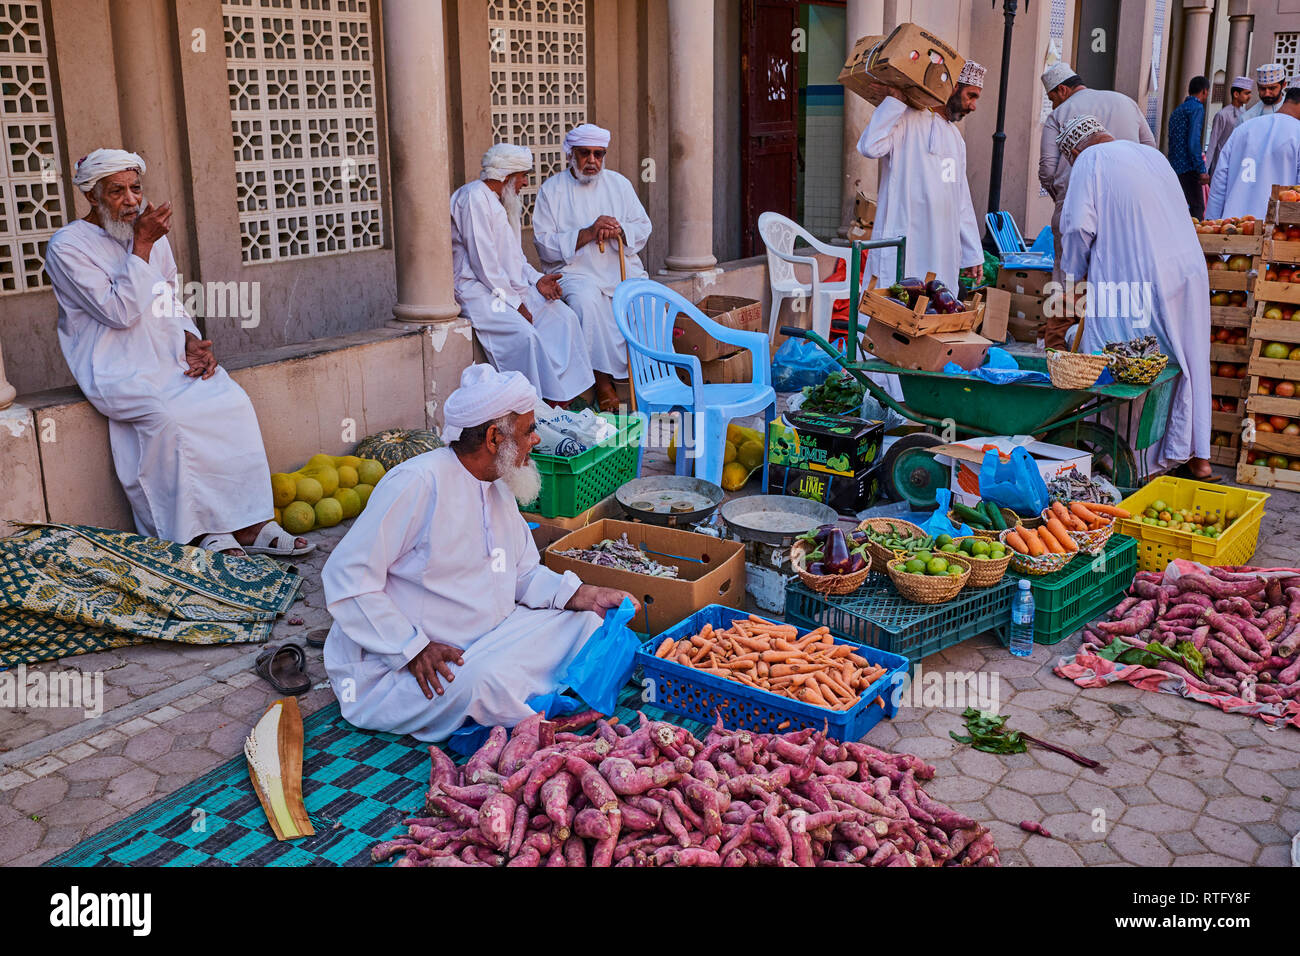 Il sultanato di Oman, Regione Ad-Dakhiliyah, Nizwa, venerdì mercato ortofrutticolo Foto Stock